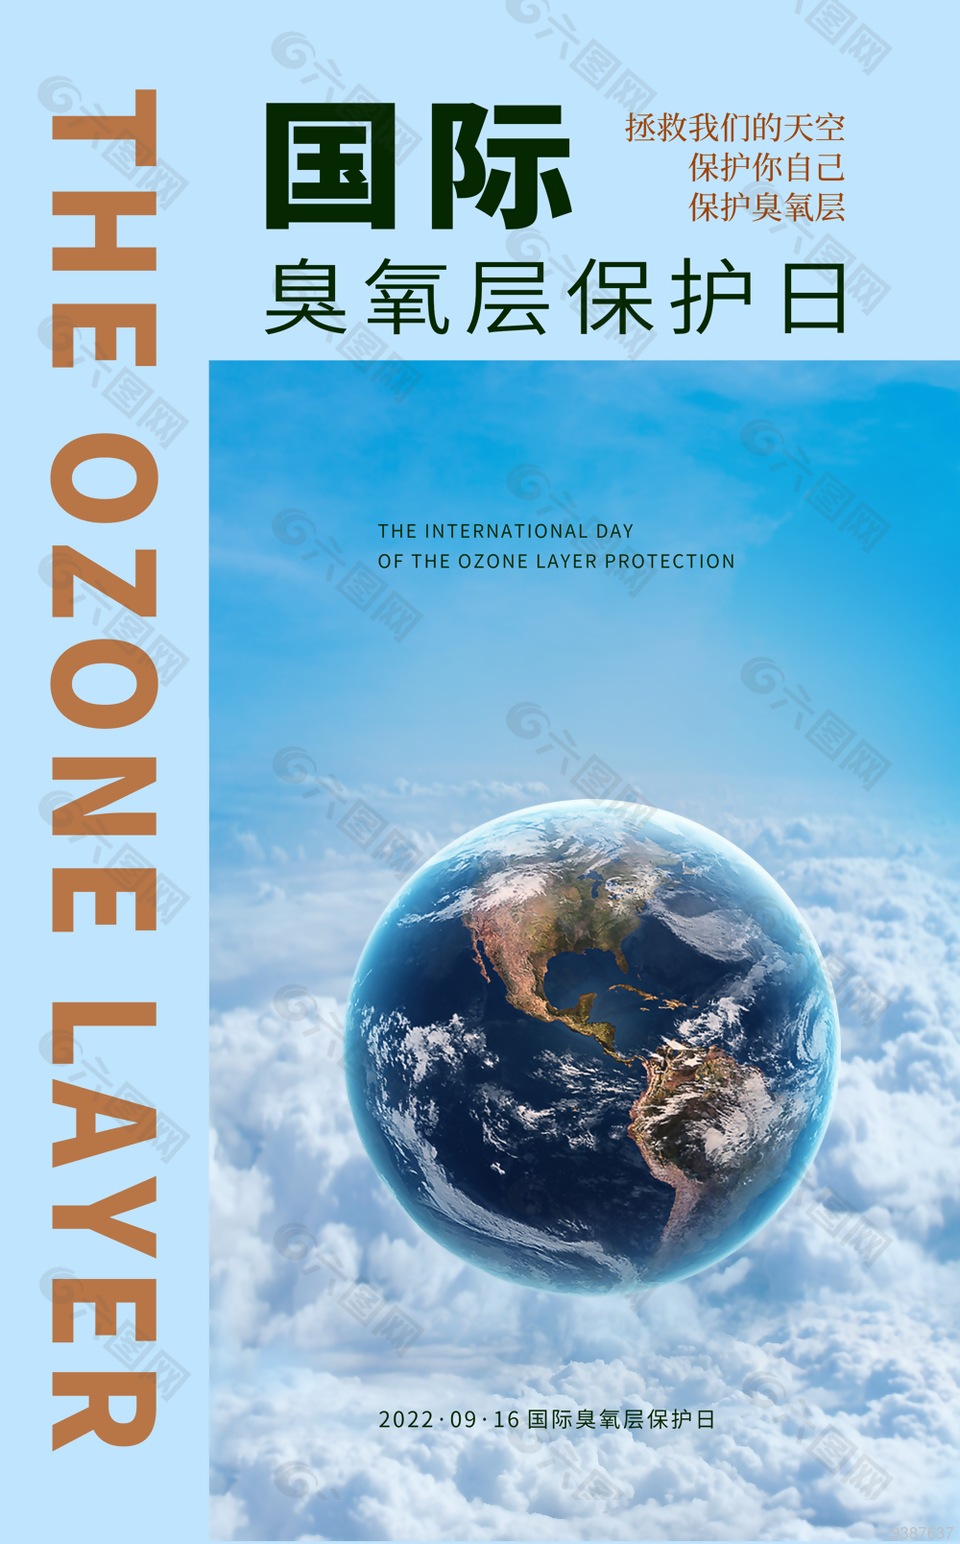 國際臭氧層保護日圖片